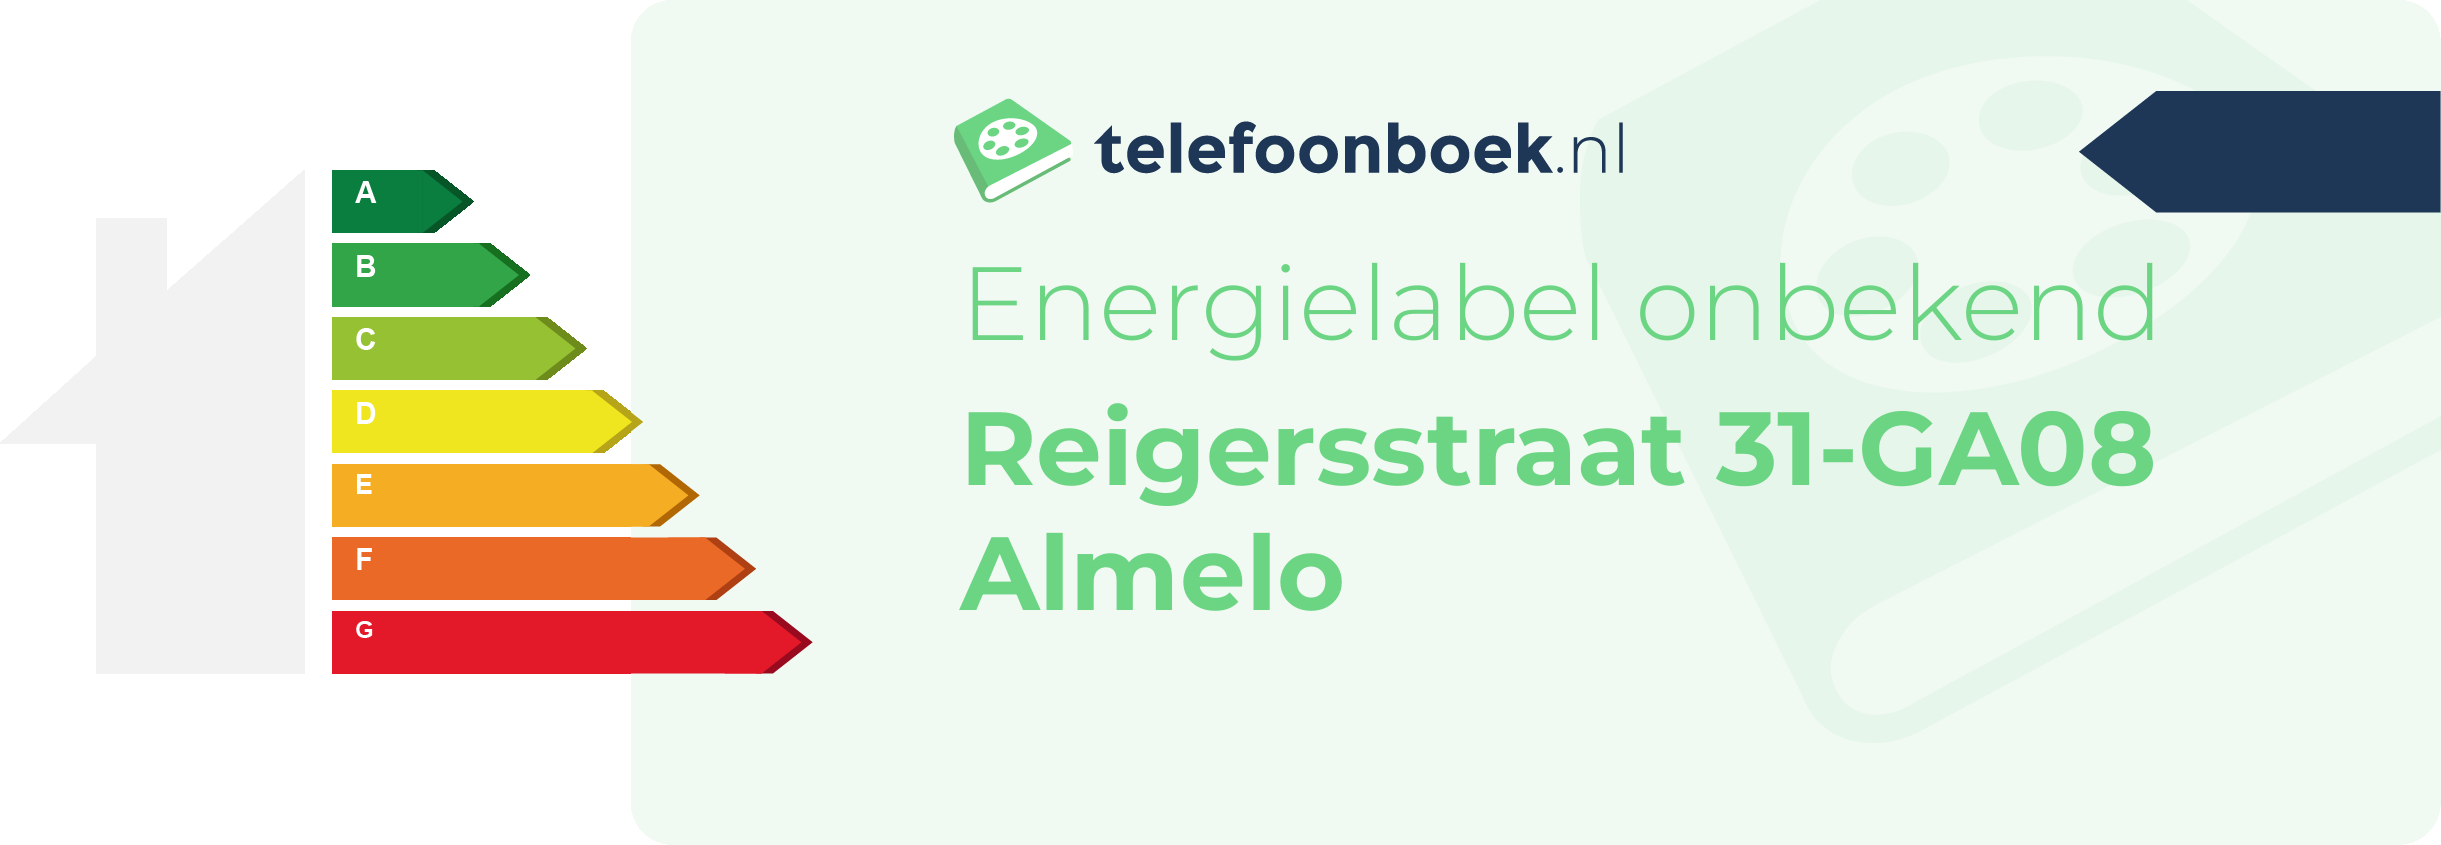 Energielabel Reigersstraat 31-GA08 Almelo